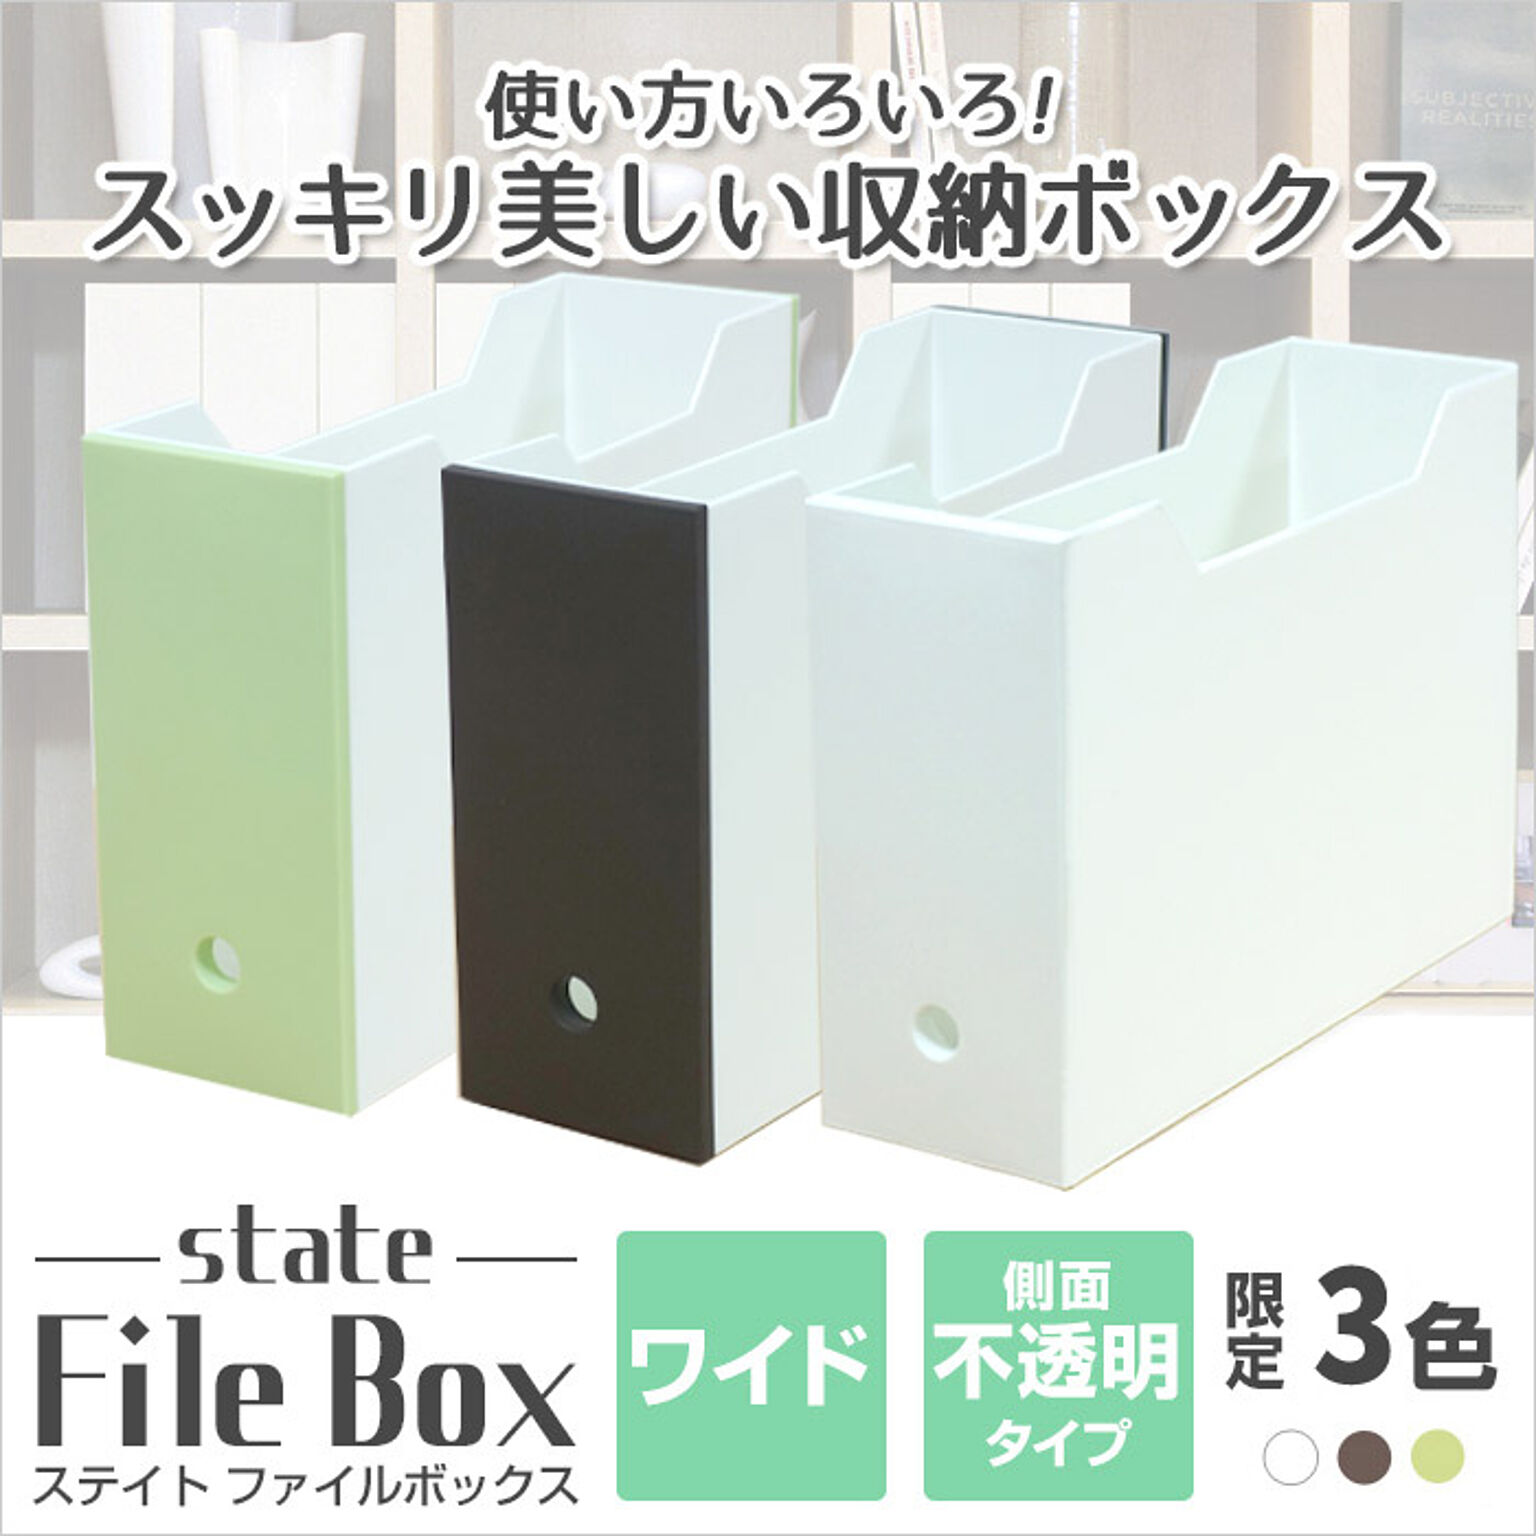 ファイルボックス